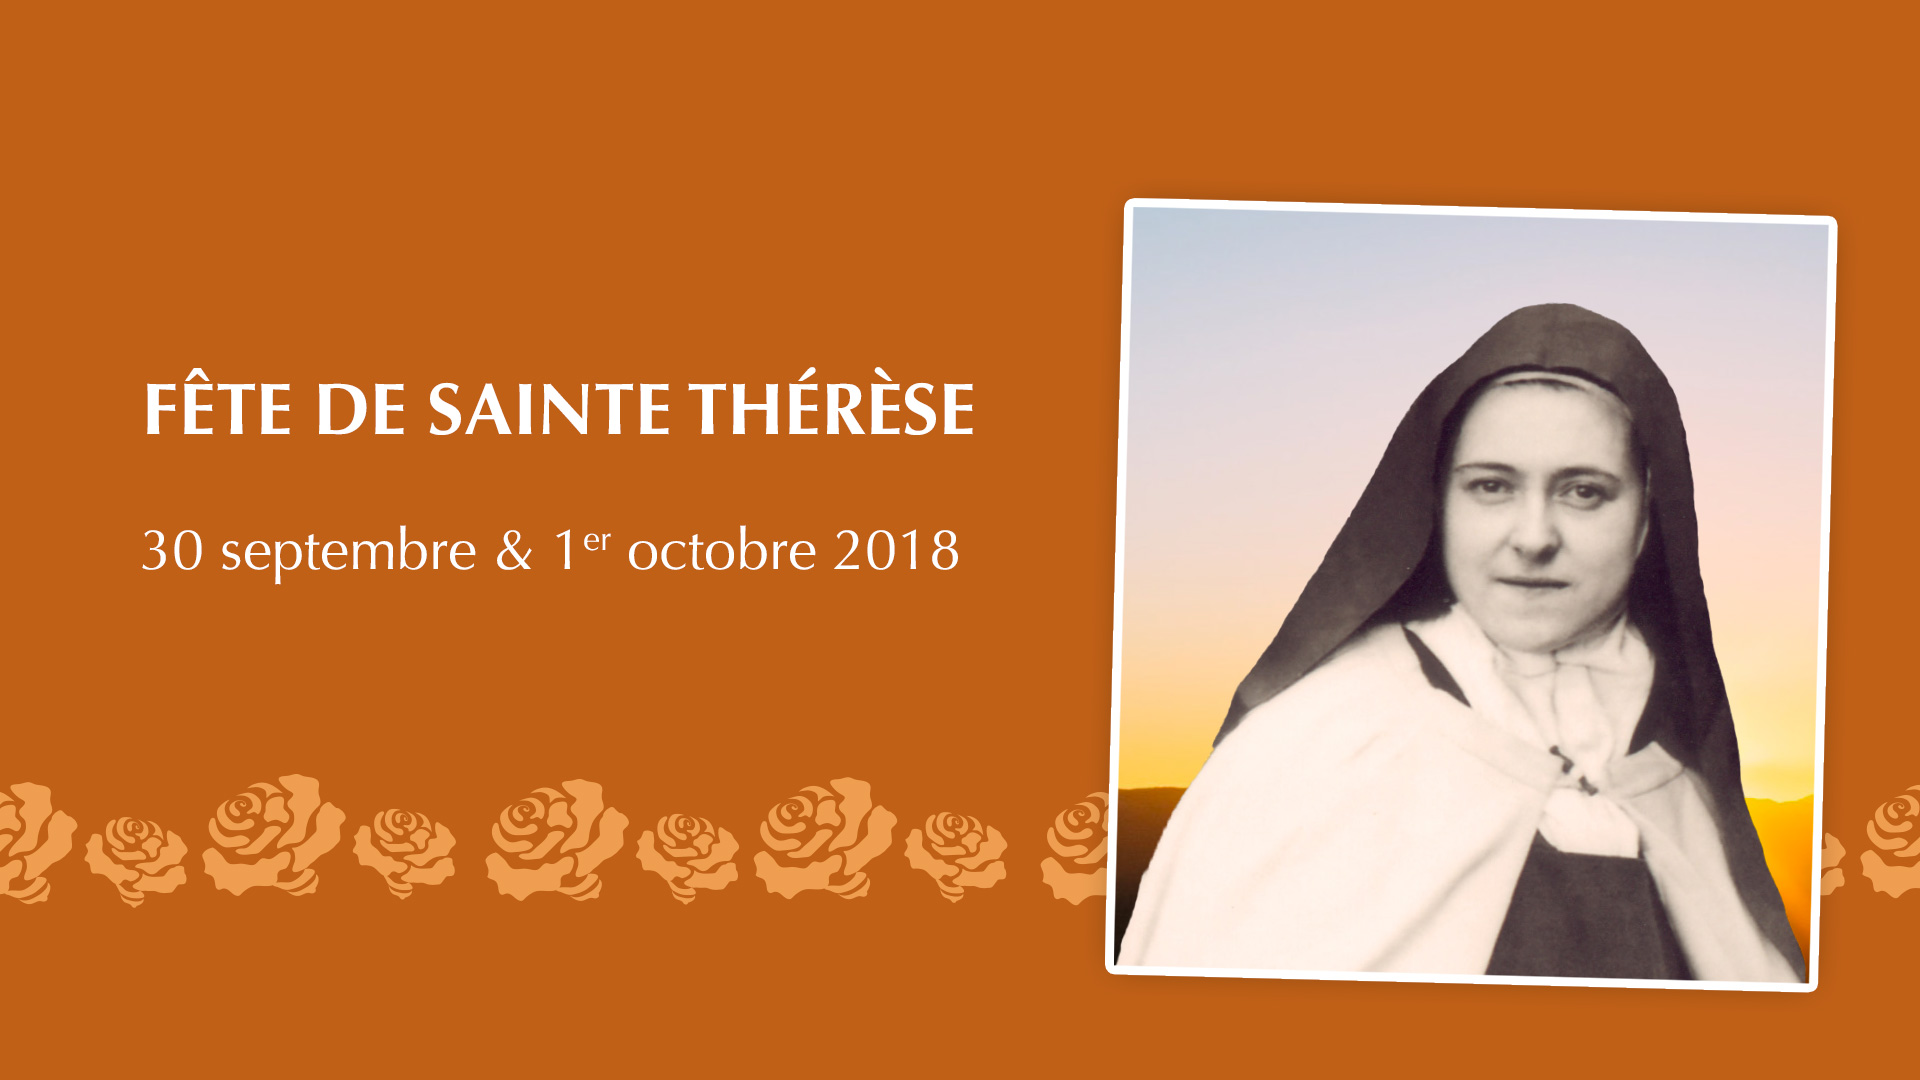 Fête de sainte Thérèse les 30 septembre et 1er octobre 2018 au sanctuaire d’Alençon (61)